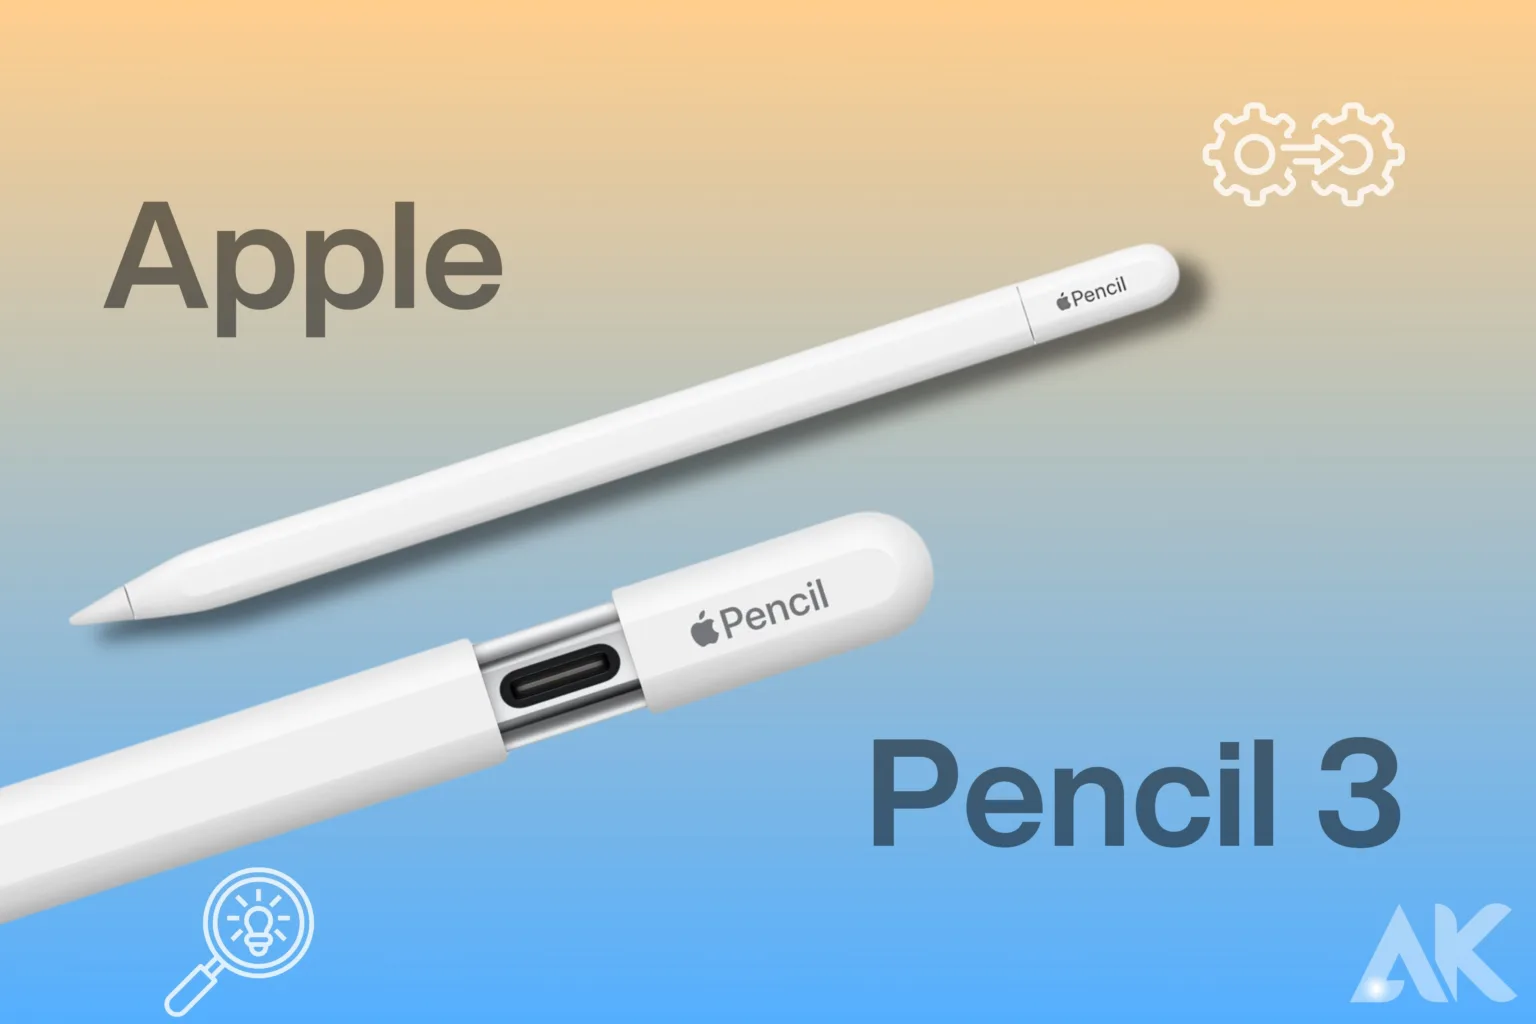 Apple Pencil 3 compatibility